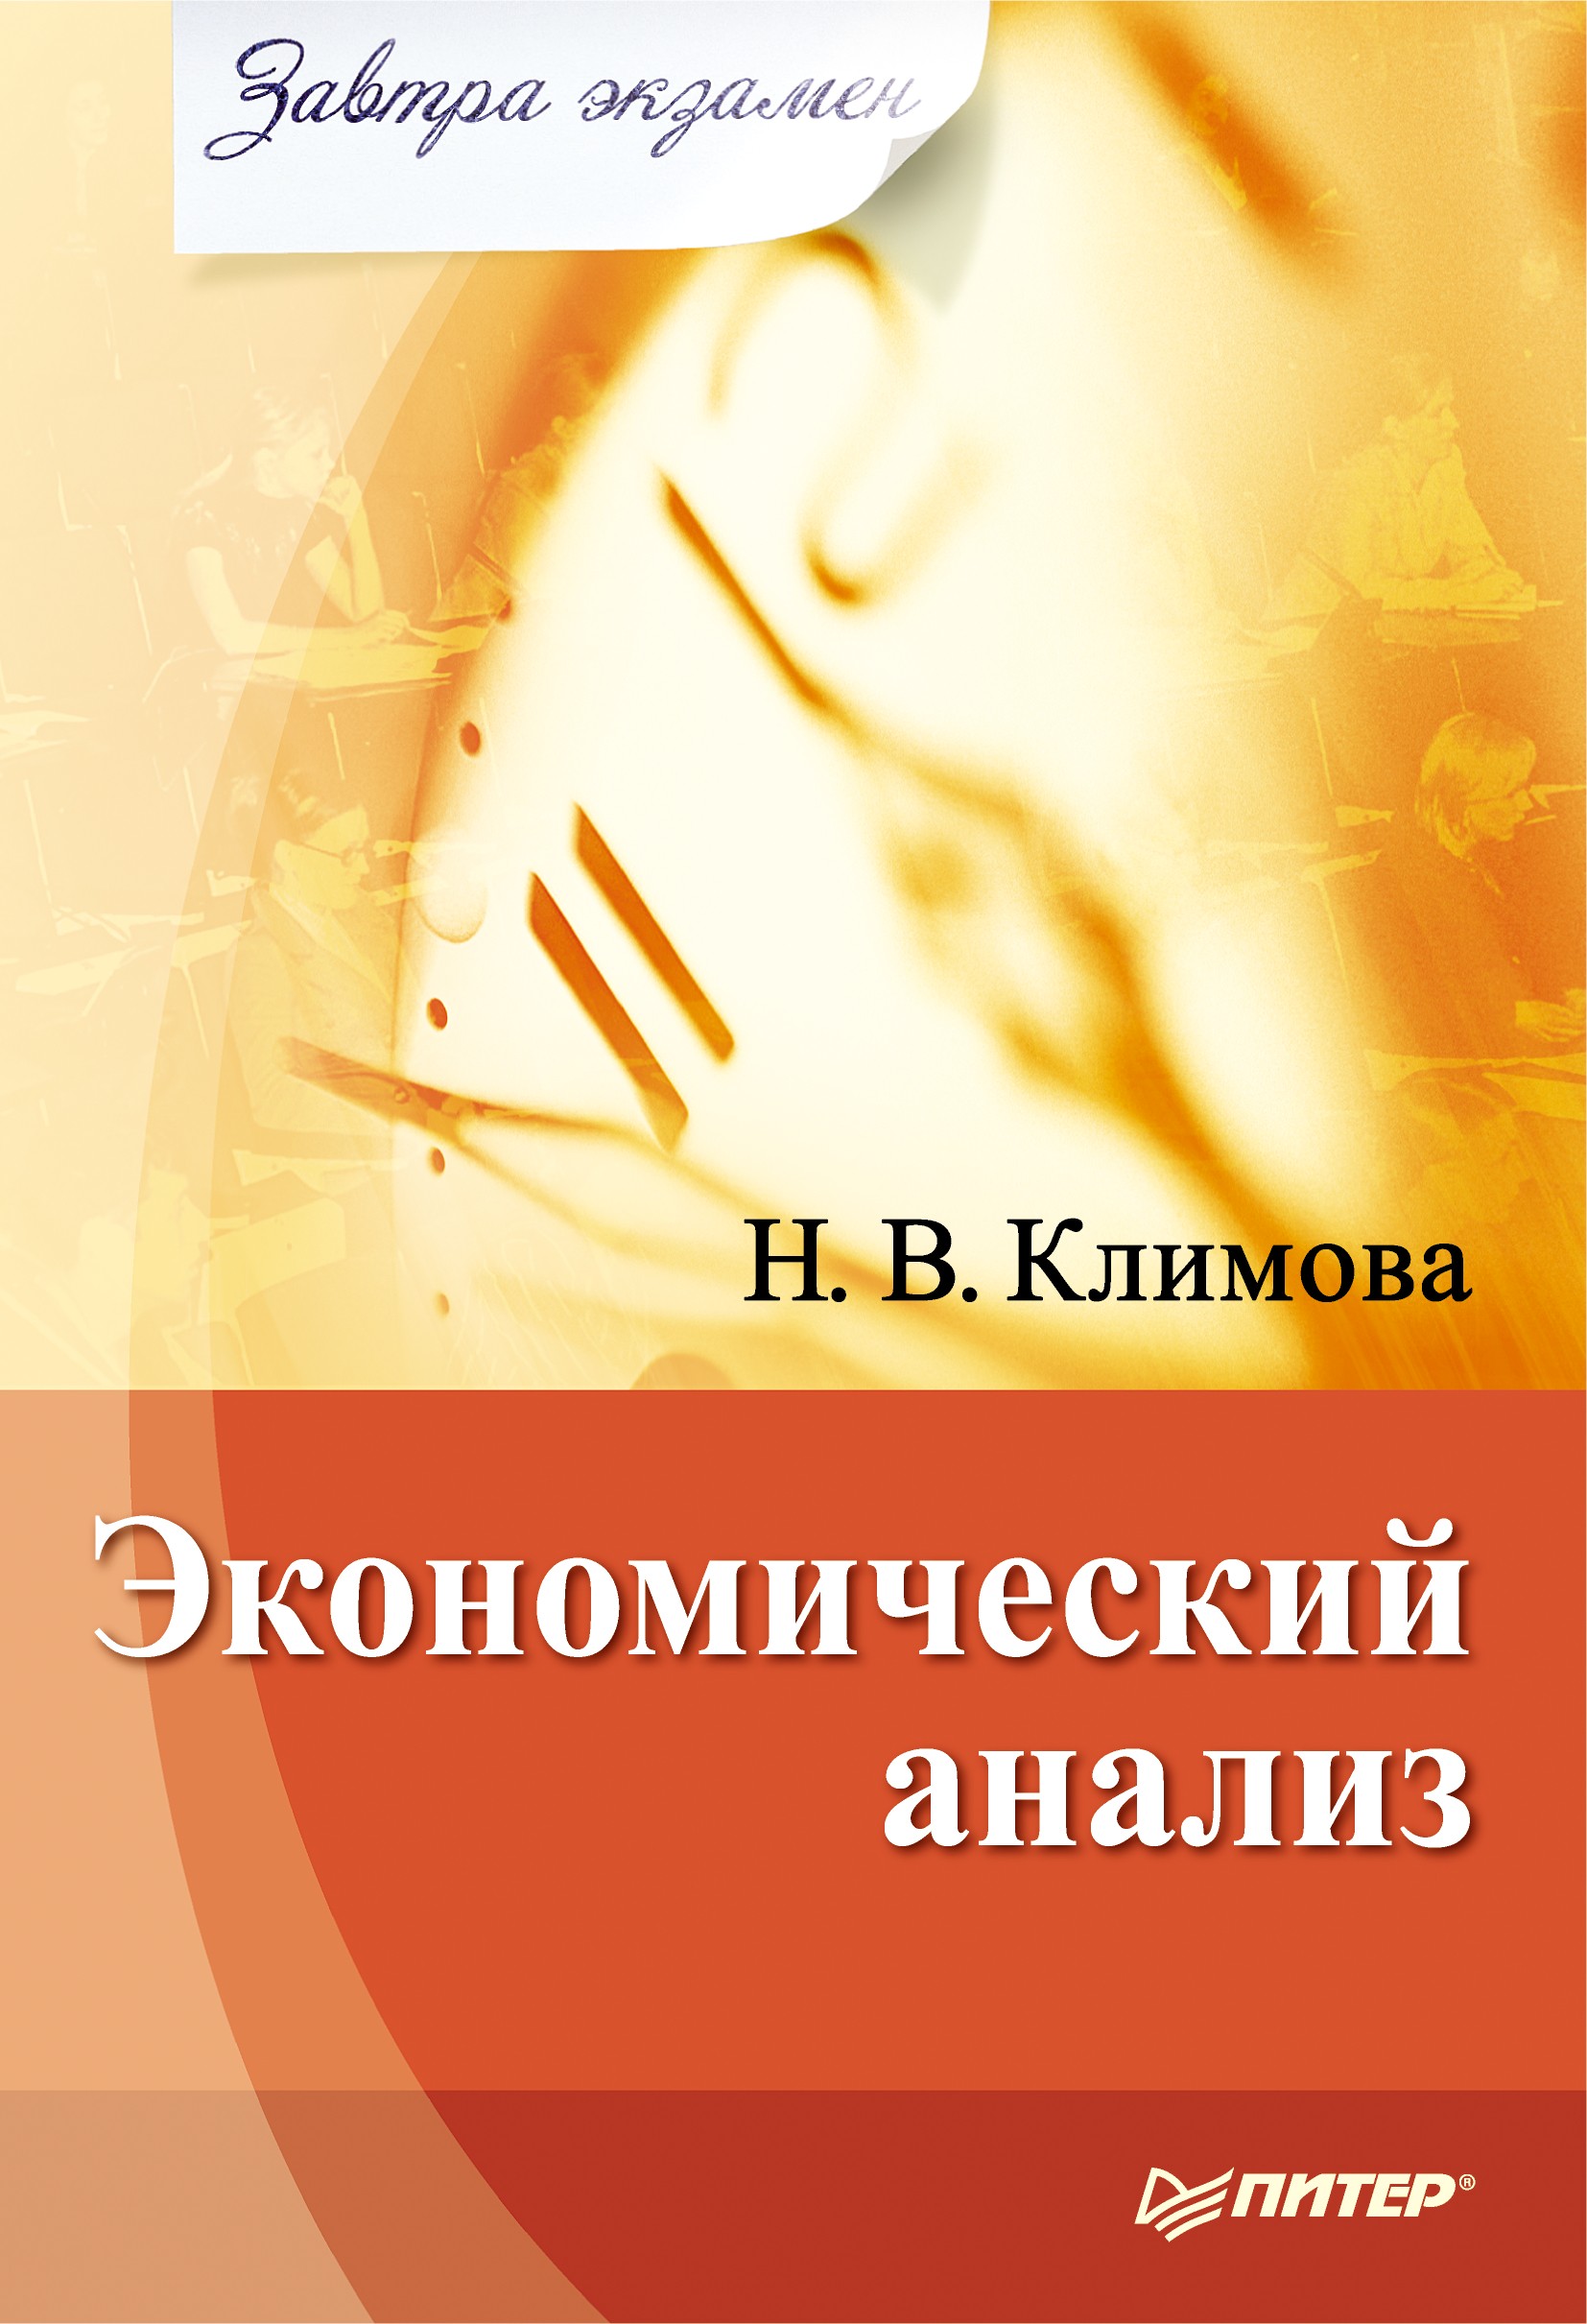 Книга Экономический анализ из серии , созданная Наталия Климова, может относится к жанру Экономика. Стоимость электронной книги Экономический анализ с идентификатором 434445 составляет 49.00 руб.